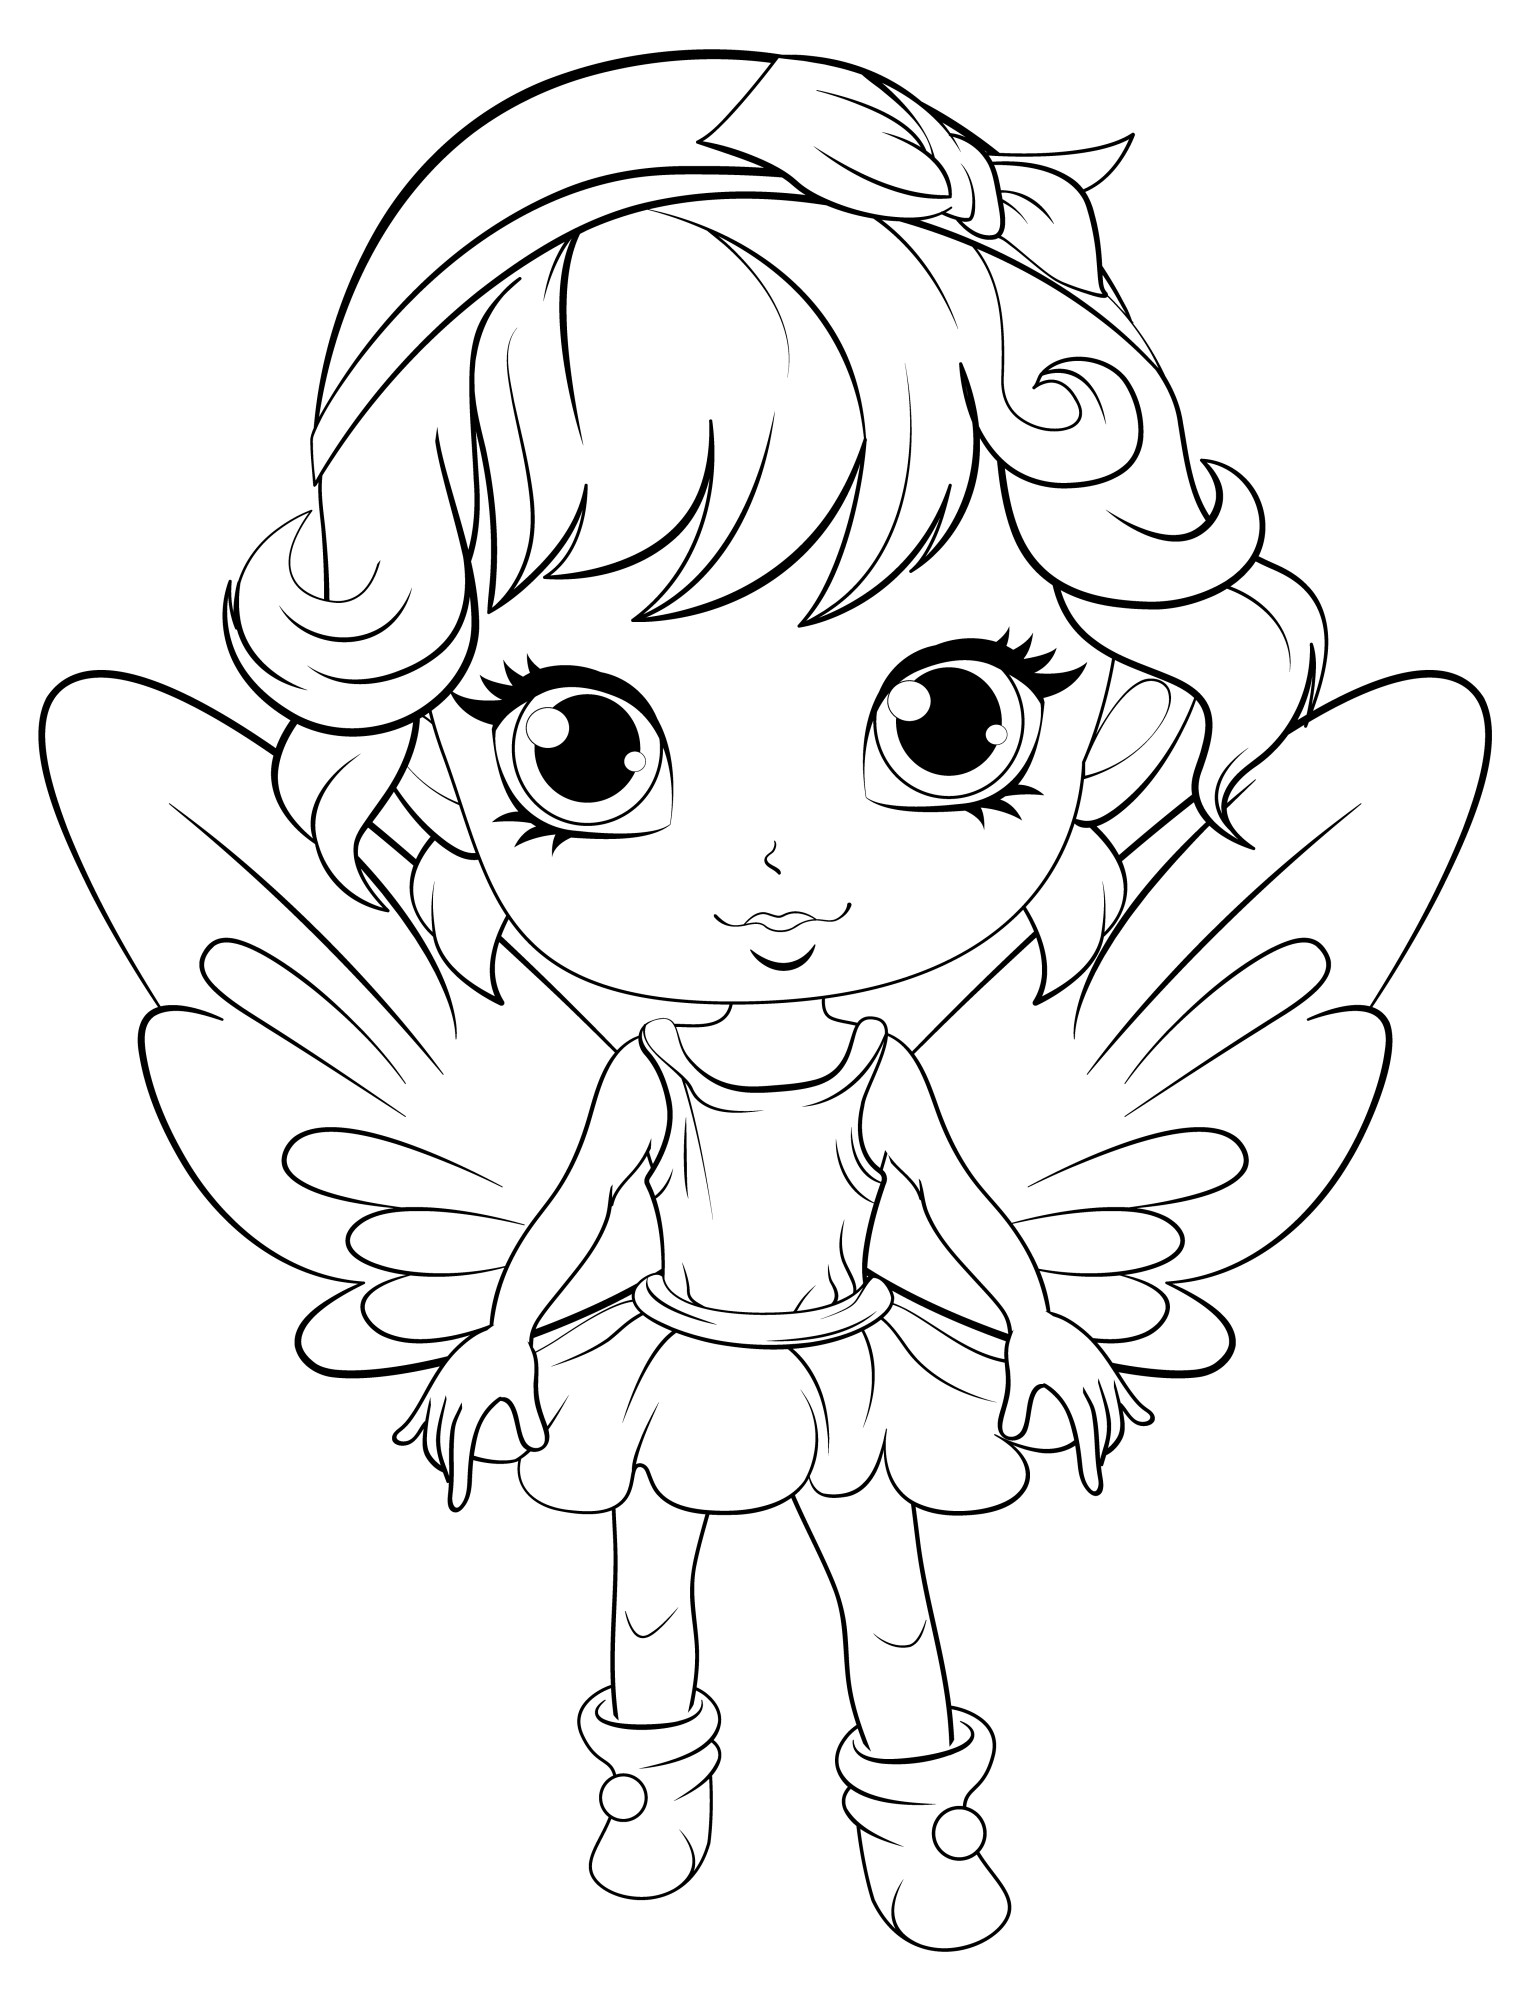 Раскраска для детей: девочка с крыльями бабочки на спине